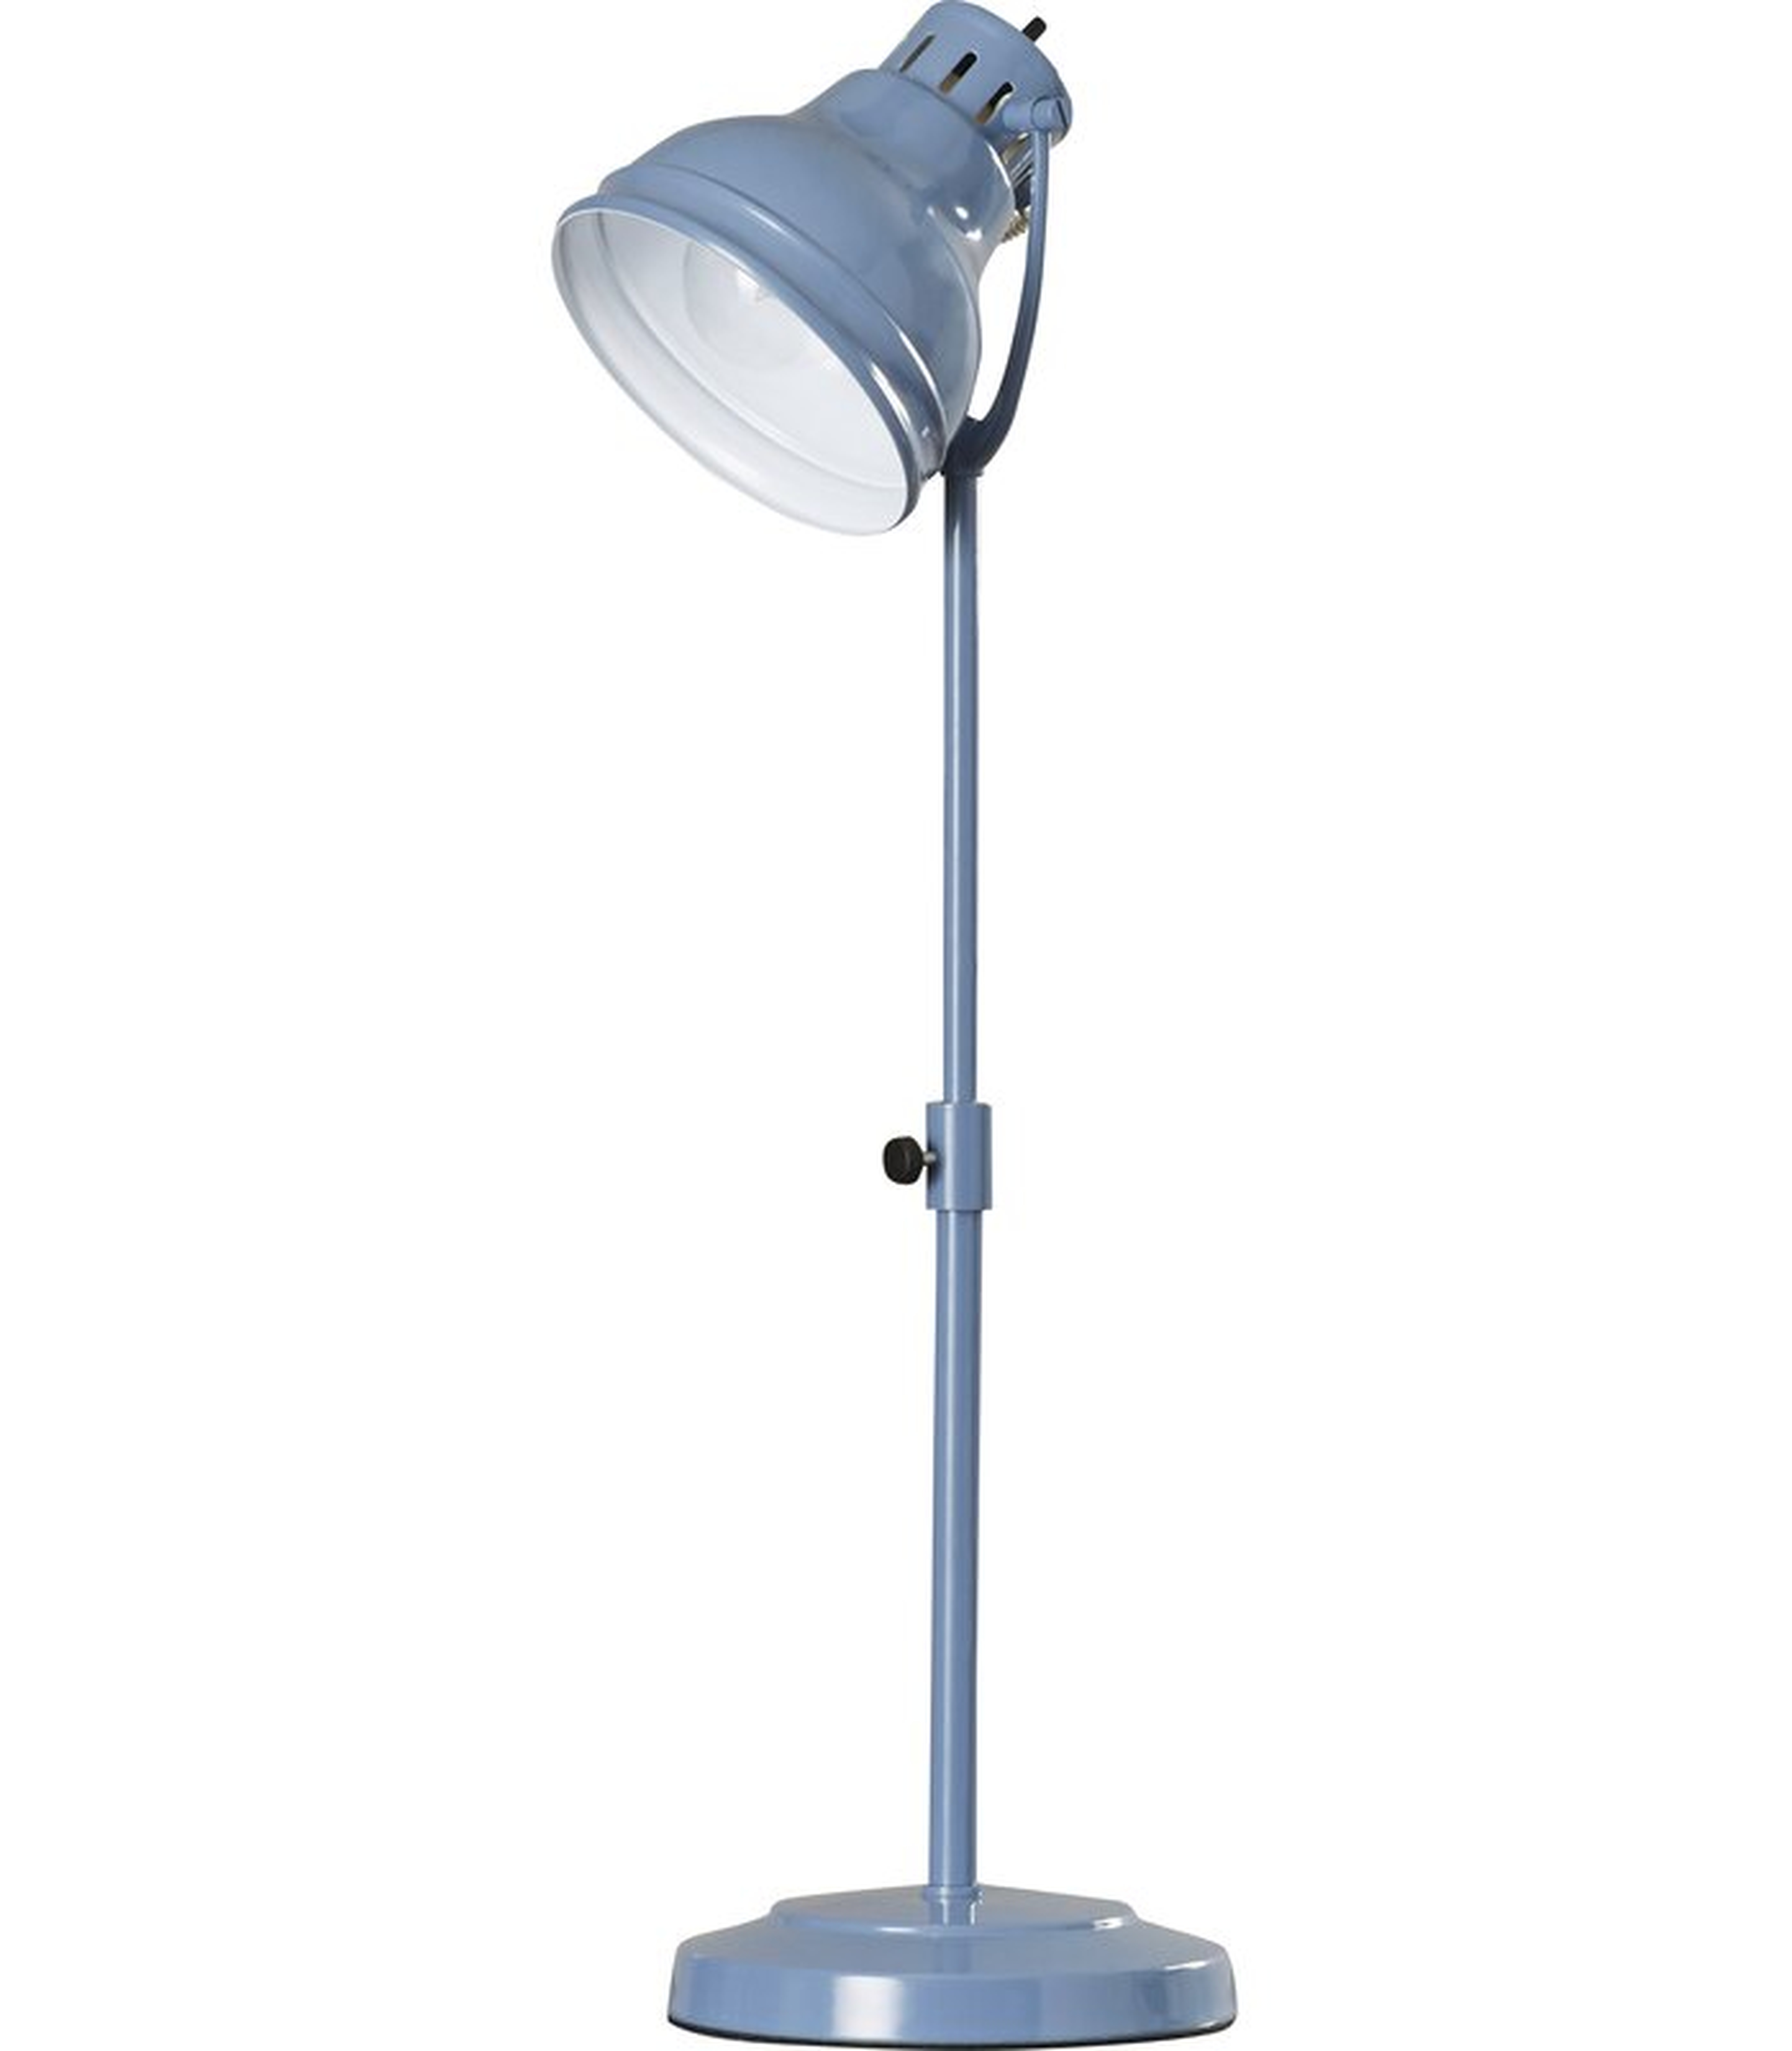 Ranier 26" Desk Lamp - Wayfair